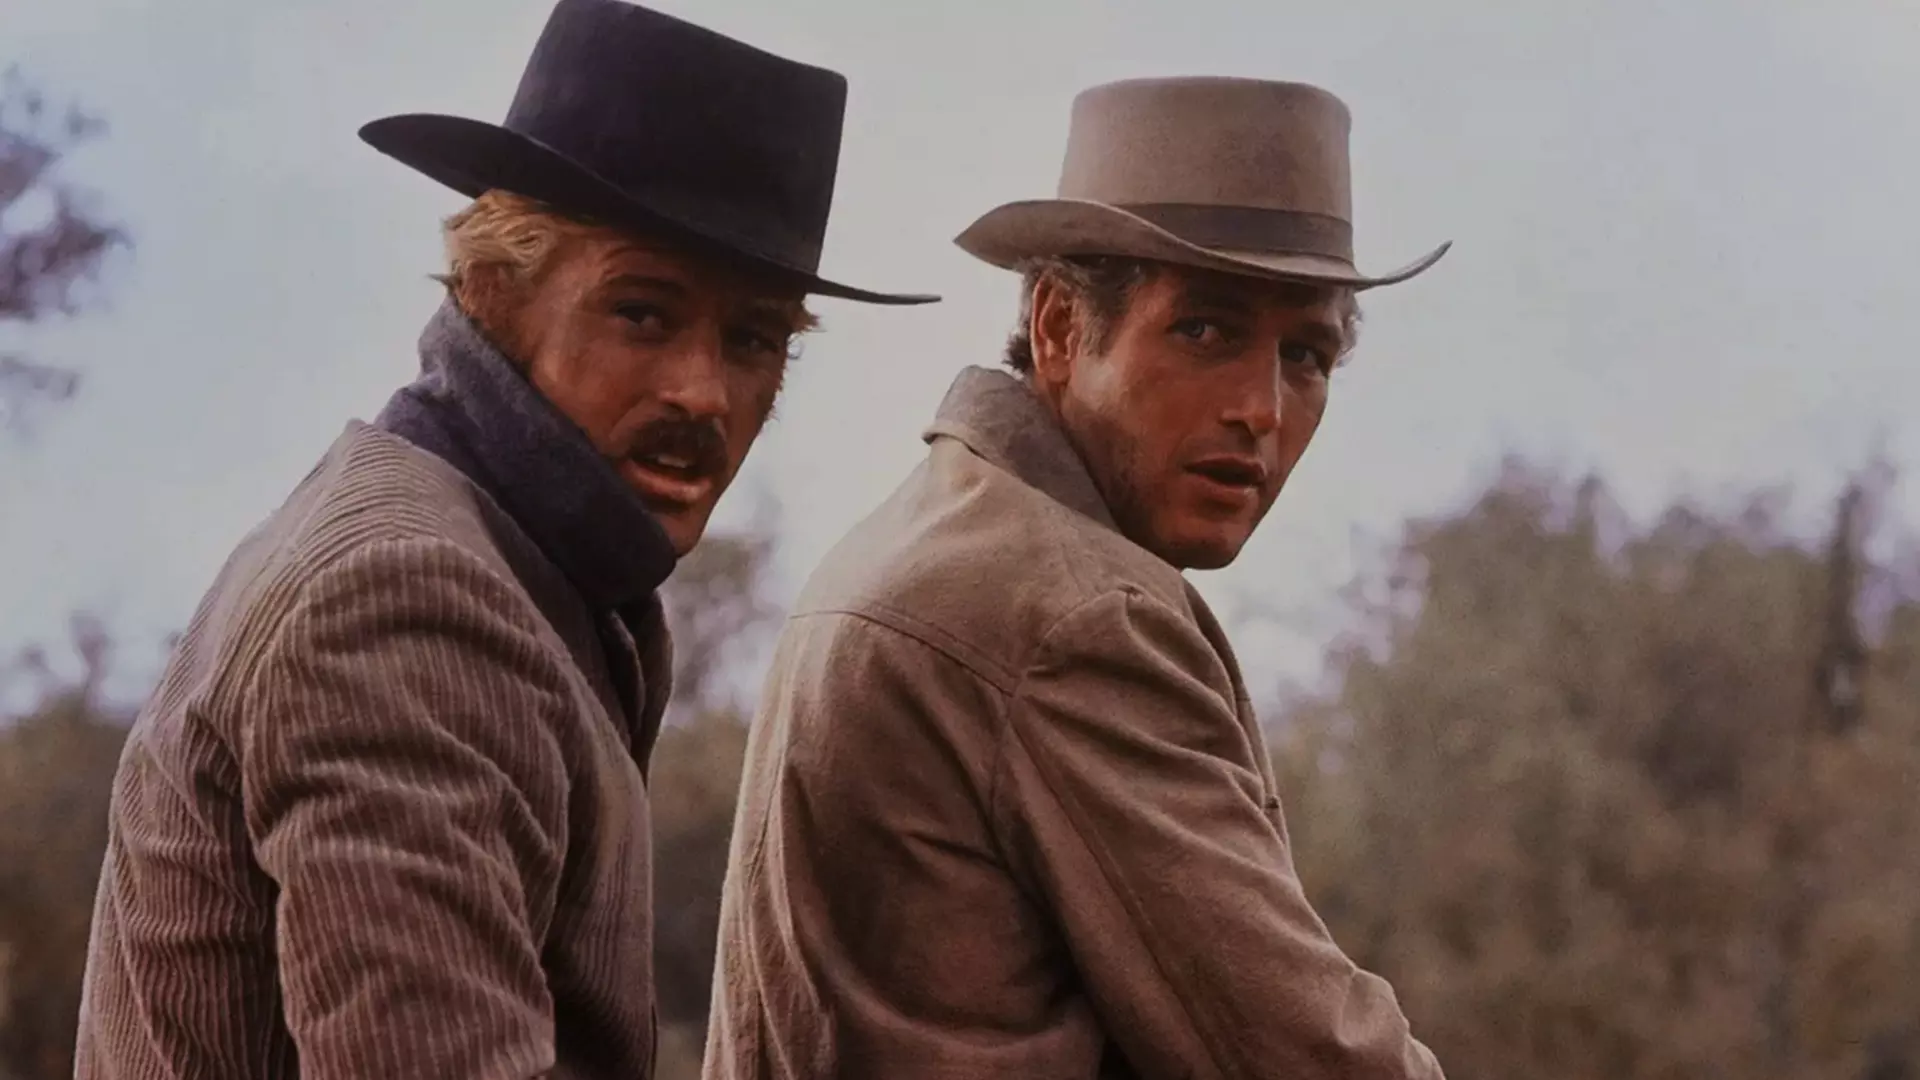 پل نیومن در حال نگاه کردن در فیلم Butch Cassidy And Sundance Kid ۳۰ تا از بهترین فیلم ها با موضوع سرقت بهمراه امتیاز IMDB ایتی مایتی